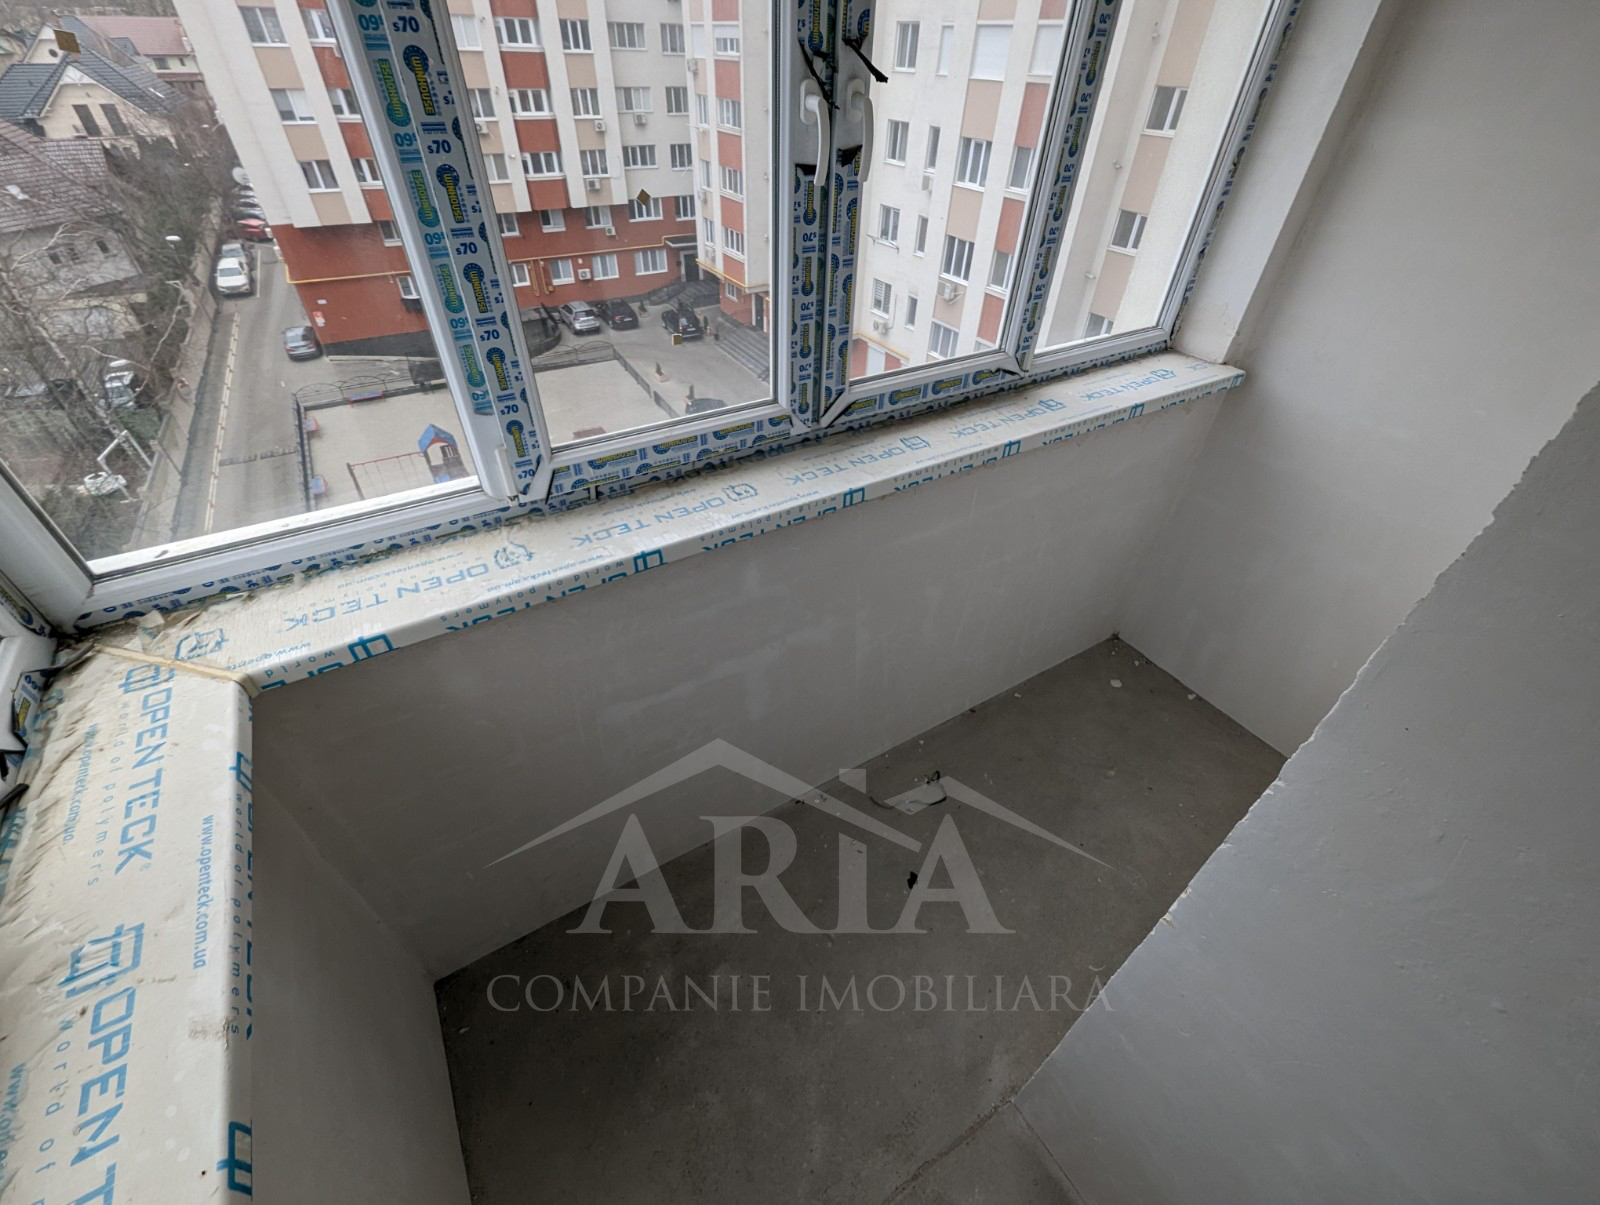 VÂNDUT Apartament de vânzare, Chișinău, sec. Centru, 3 odăi, variantă albă, 96 m2, et.4